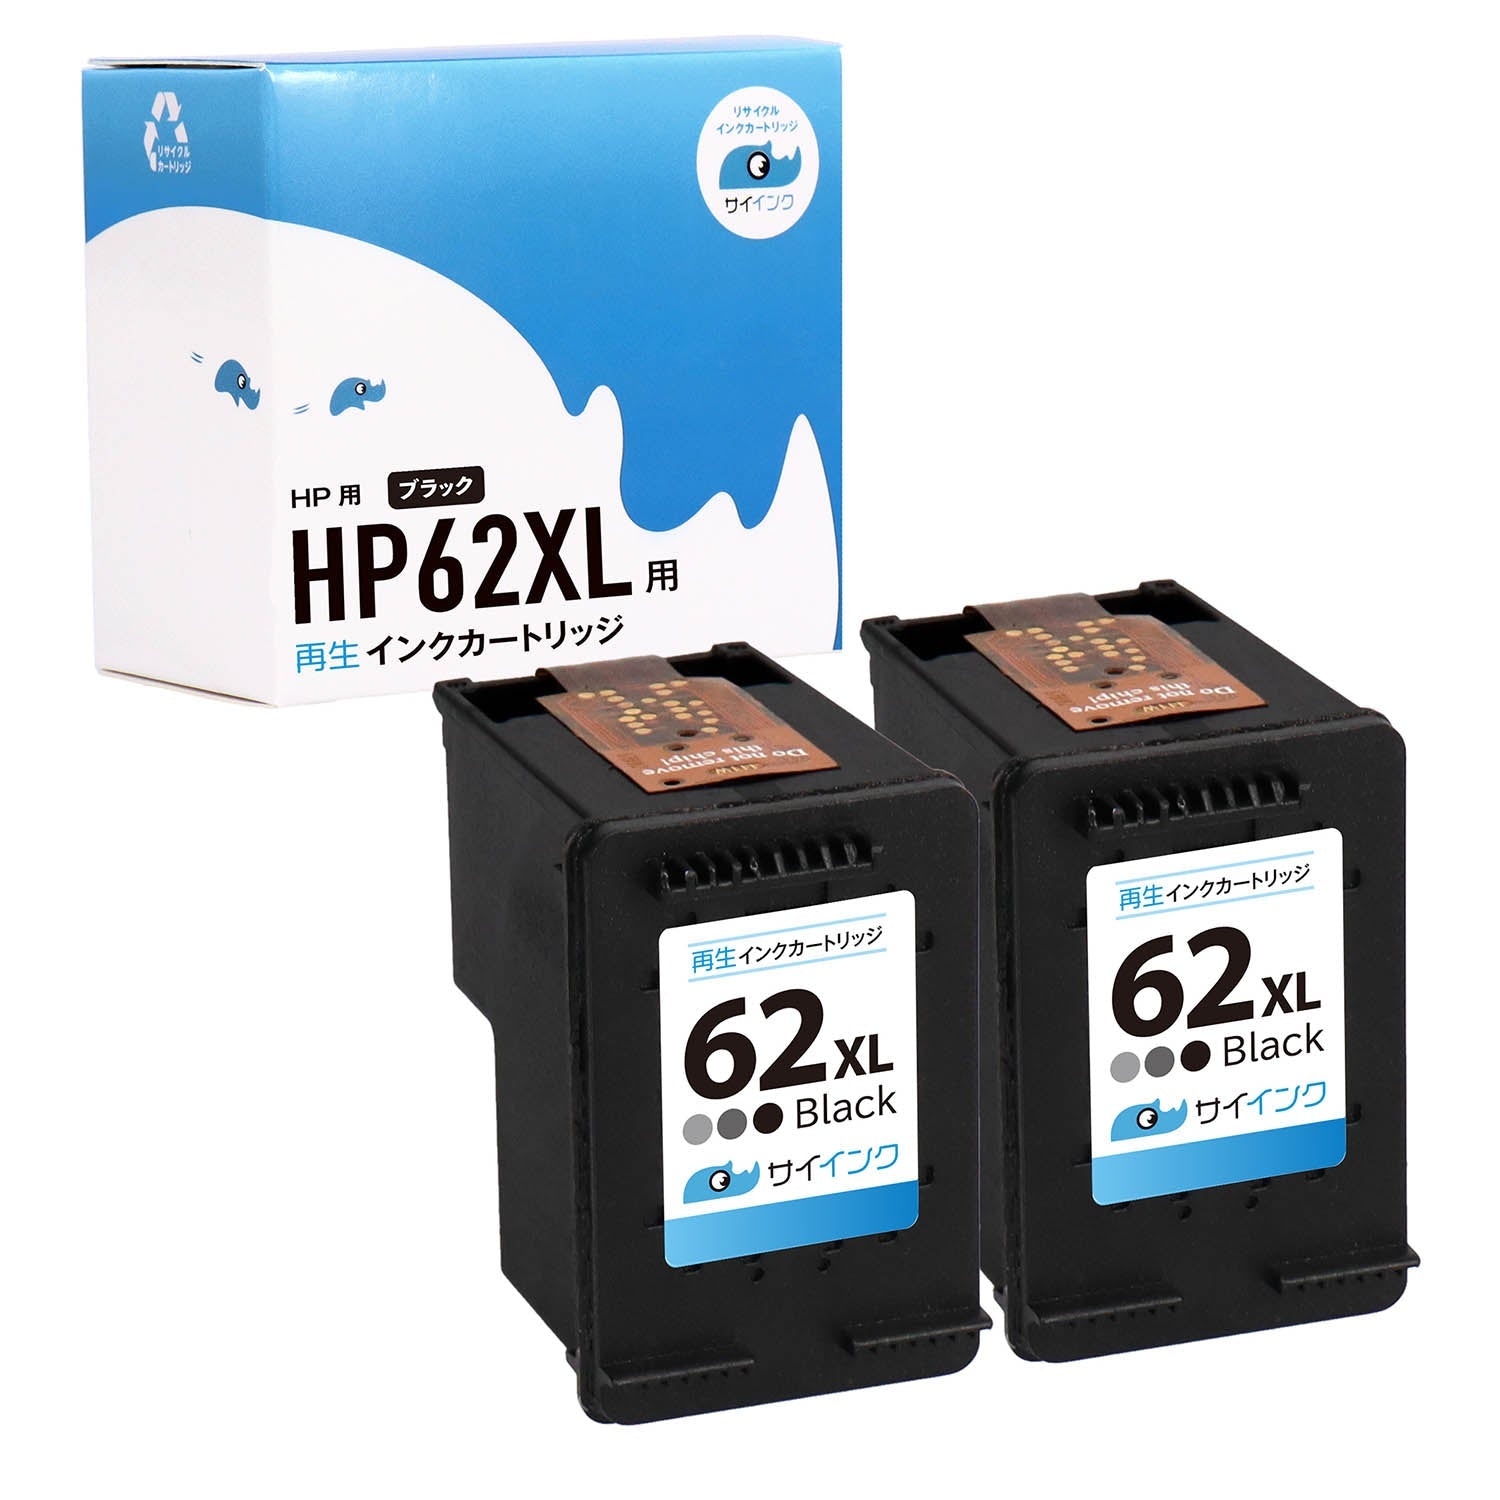 HP用 HP XL リサイクルインク ブラック 増量版